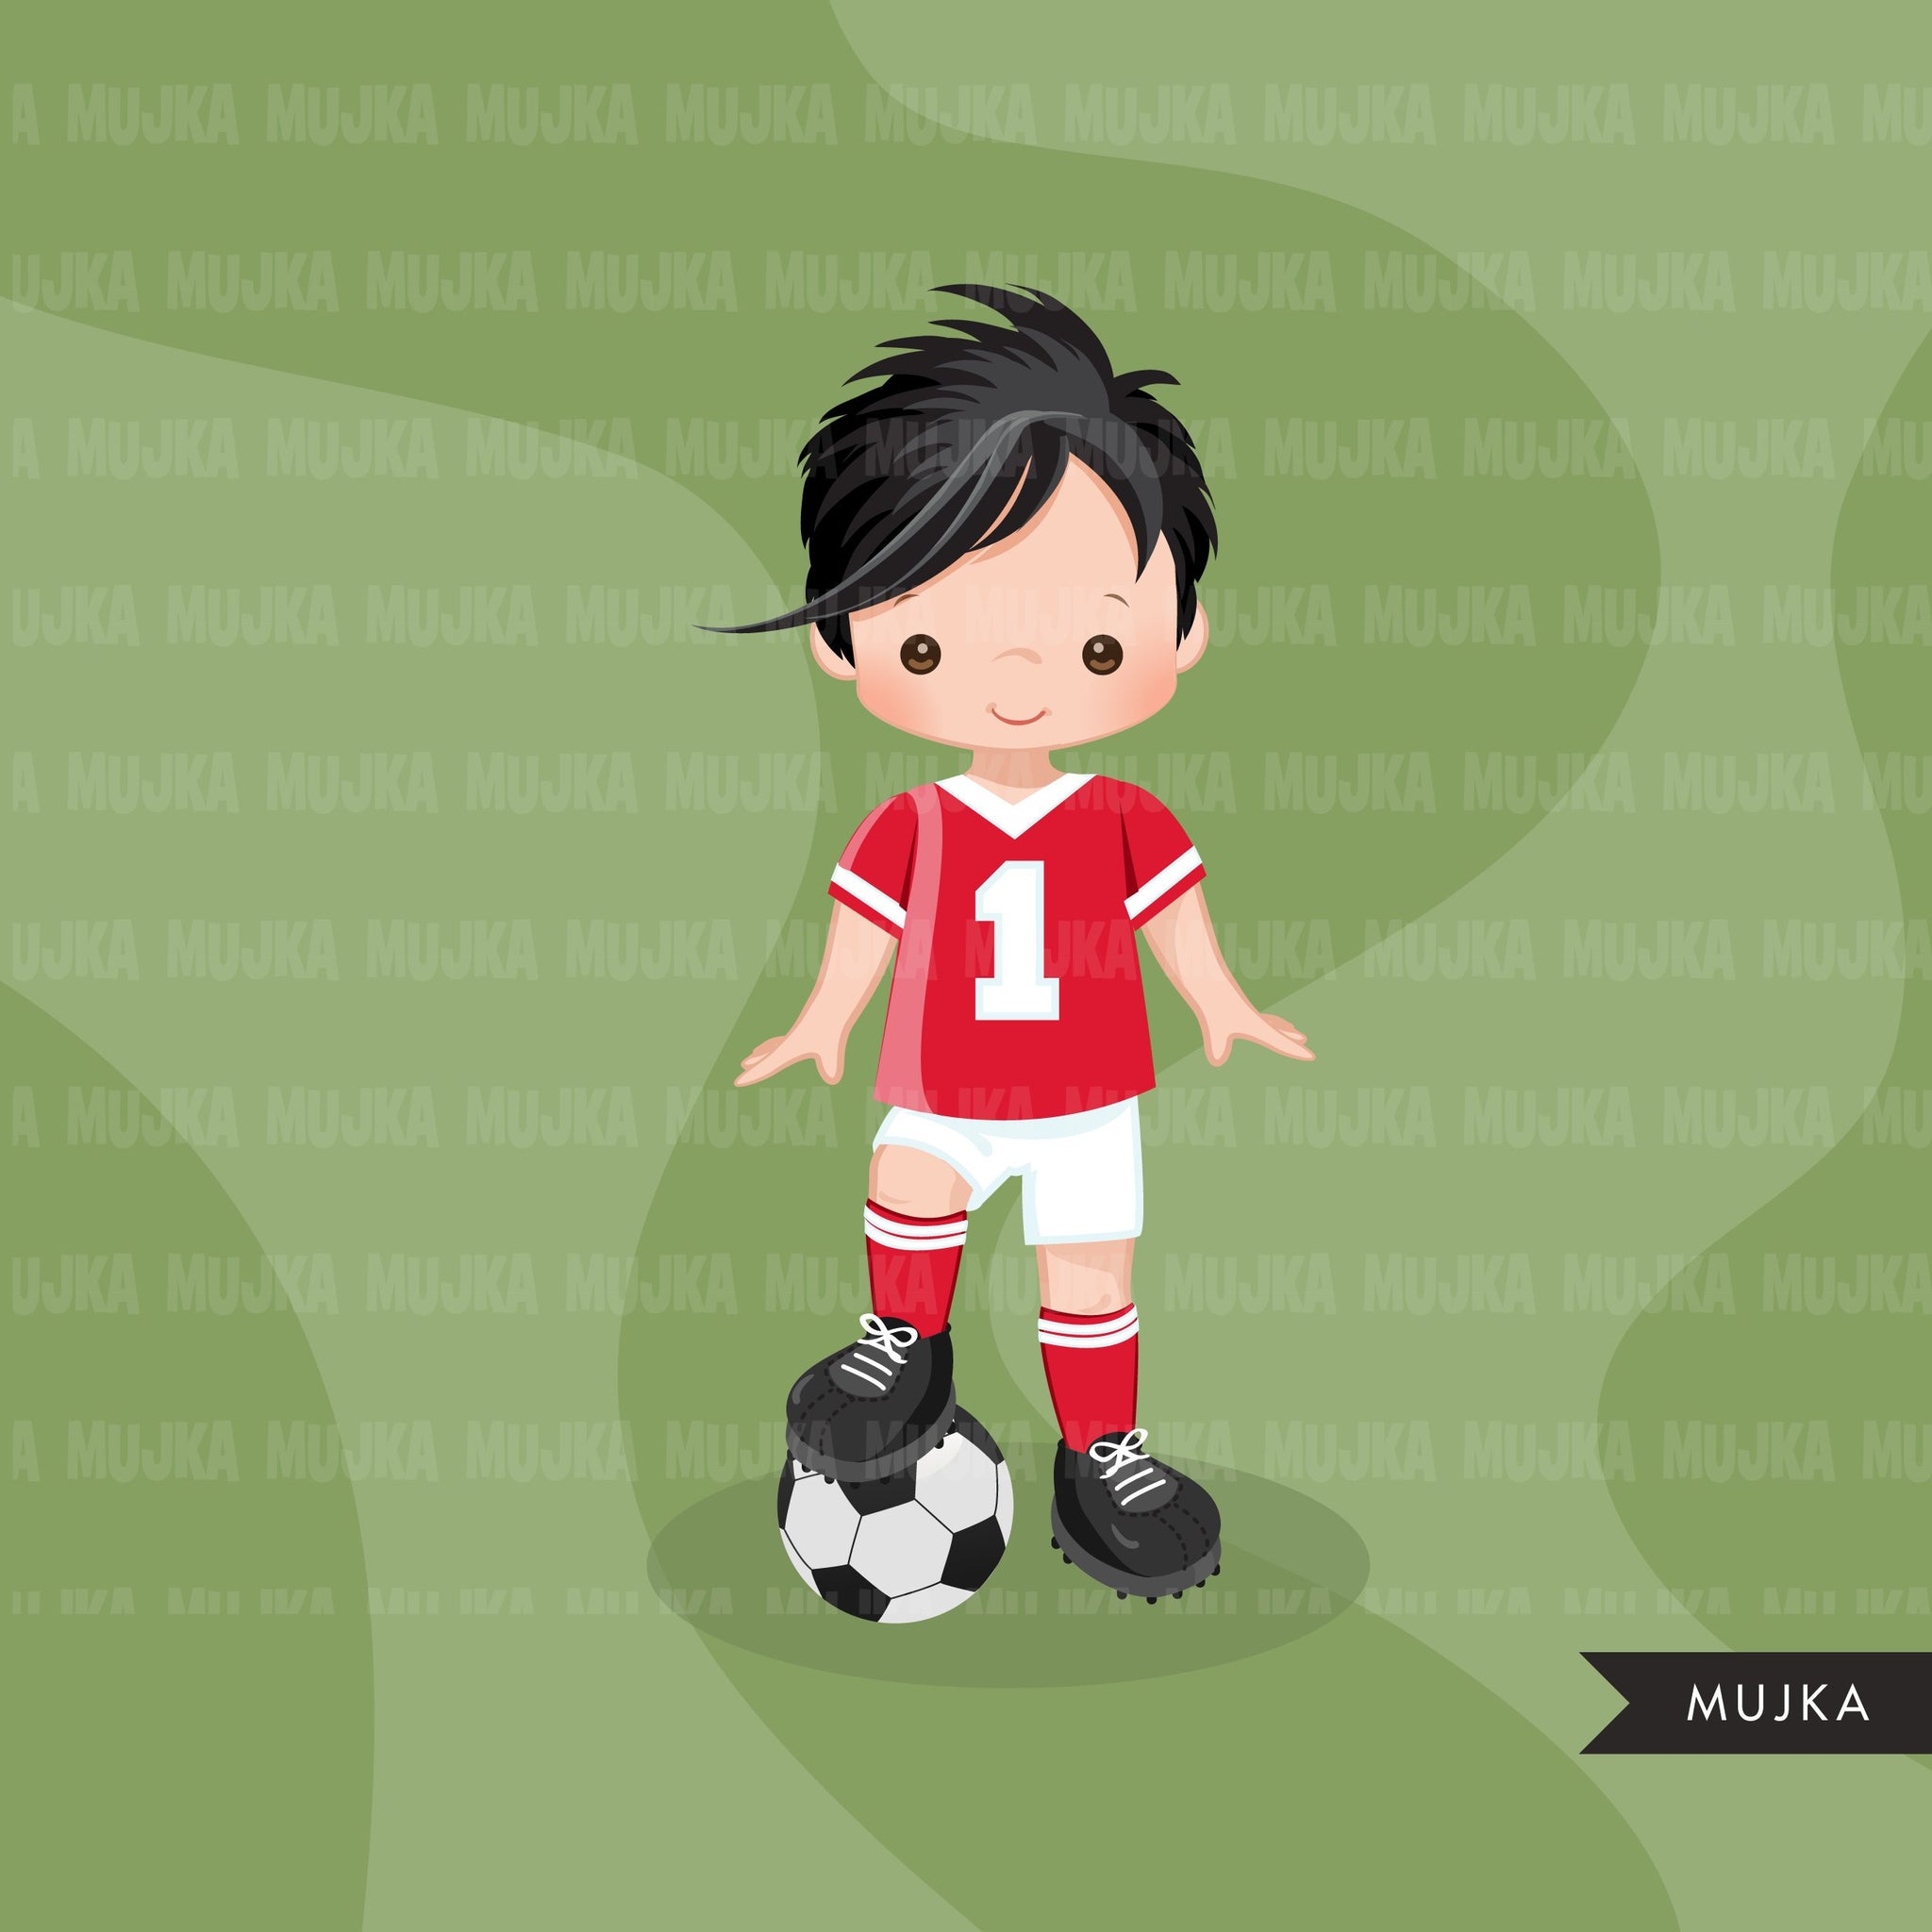 Clipart de futebol, garoto de camisa vermelha e branca